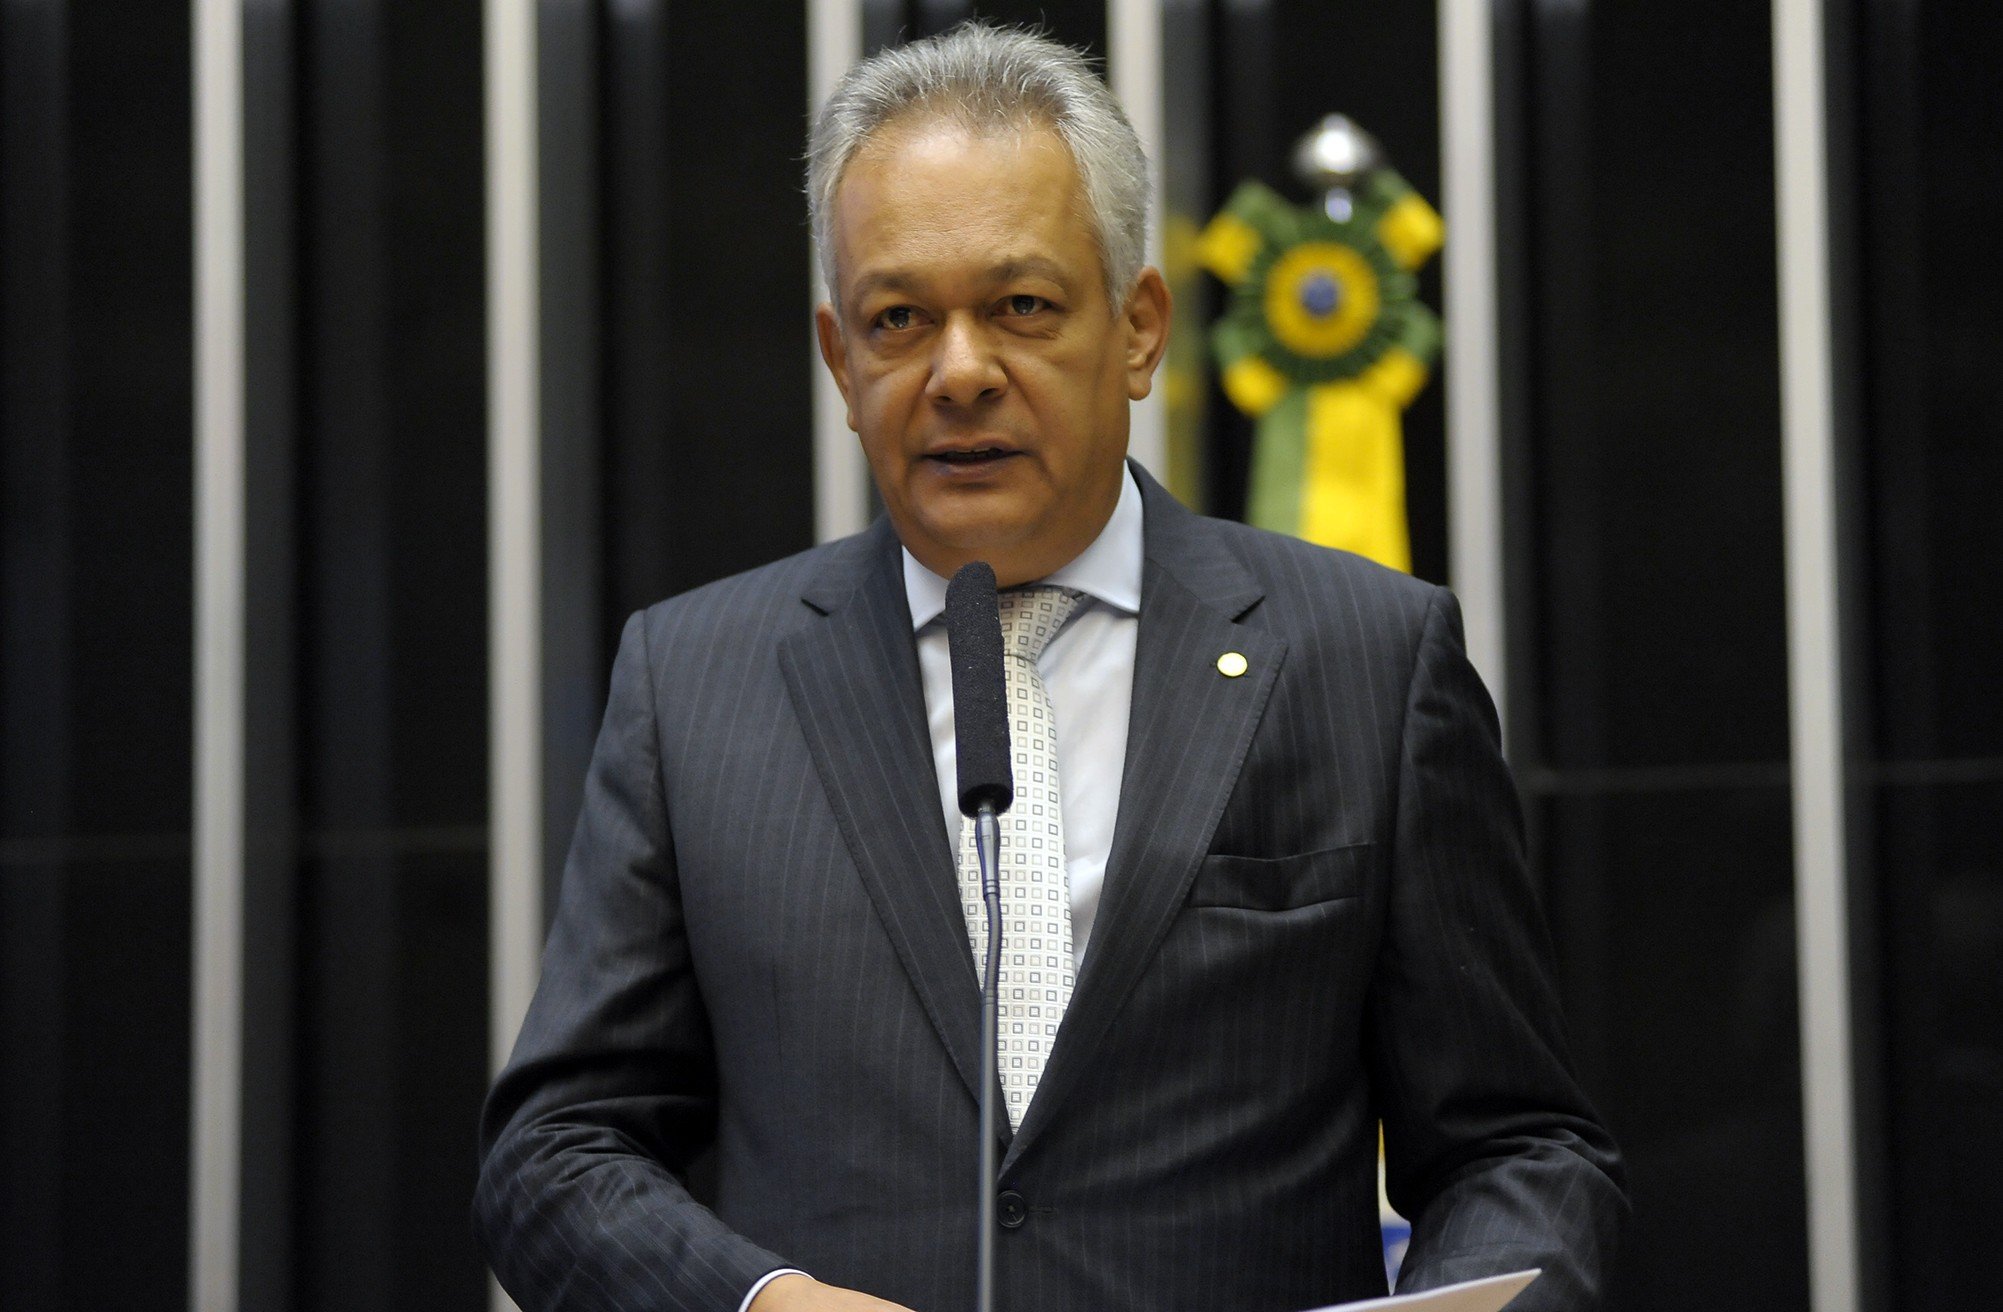 O delegado Edson Moreira (PMN-MG), deputado federal, em discurso na Câmara